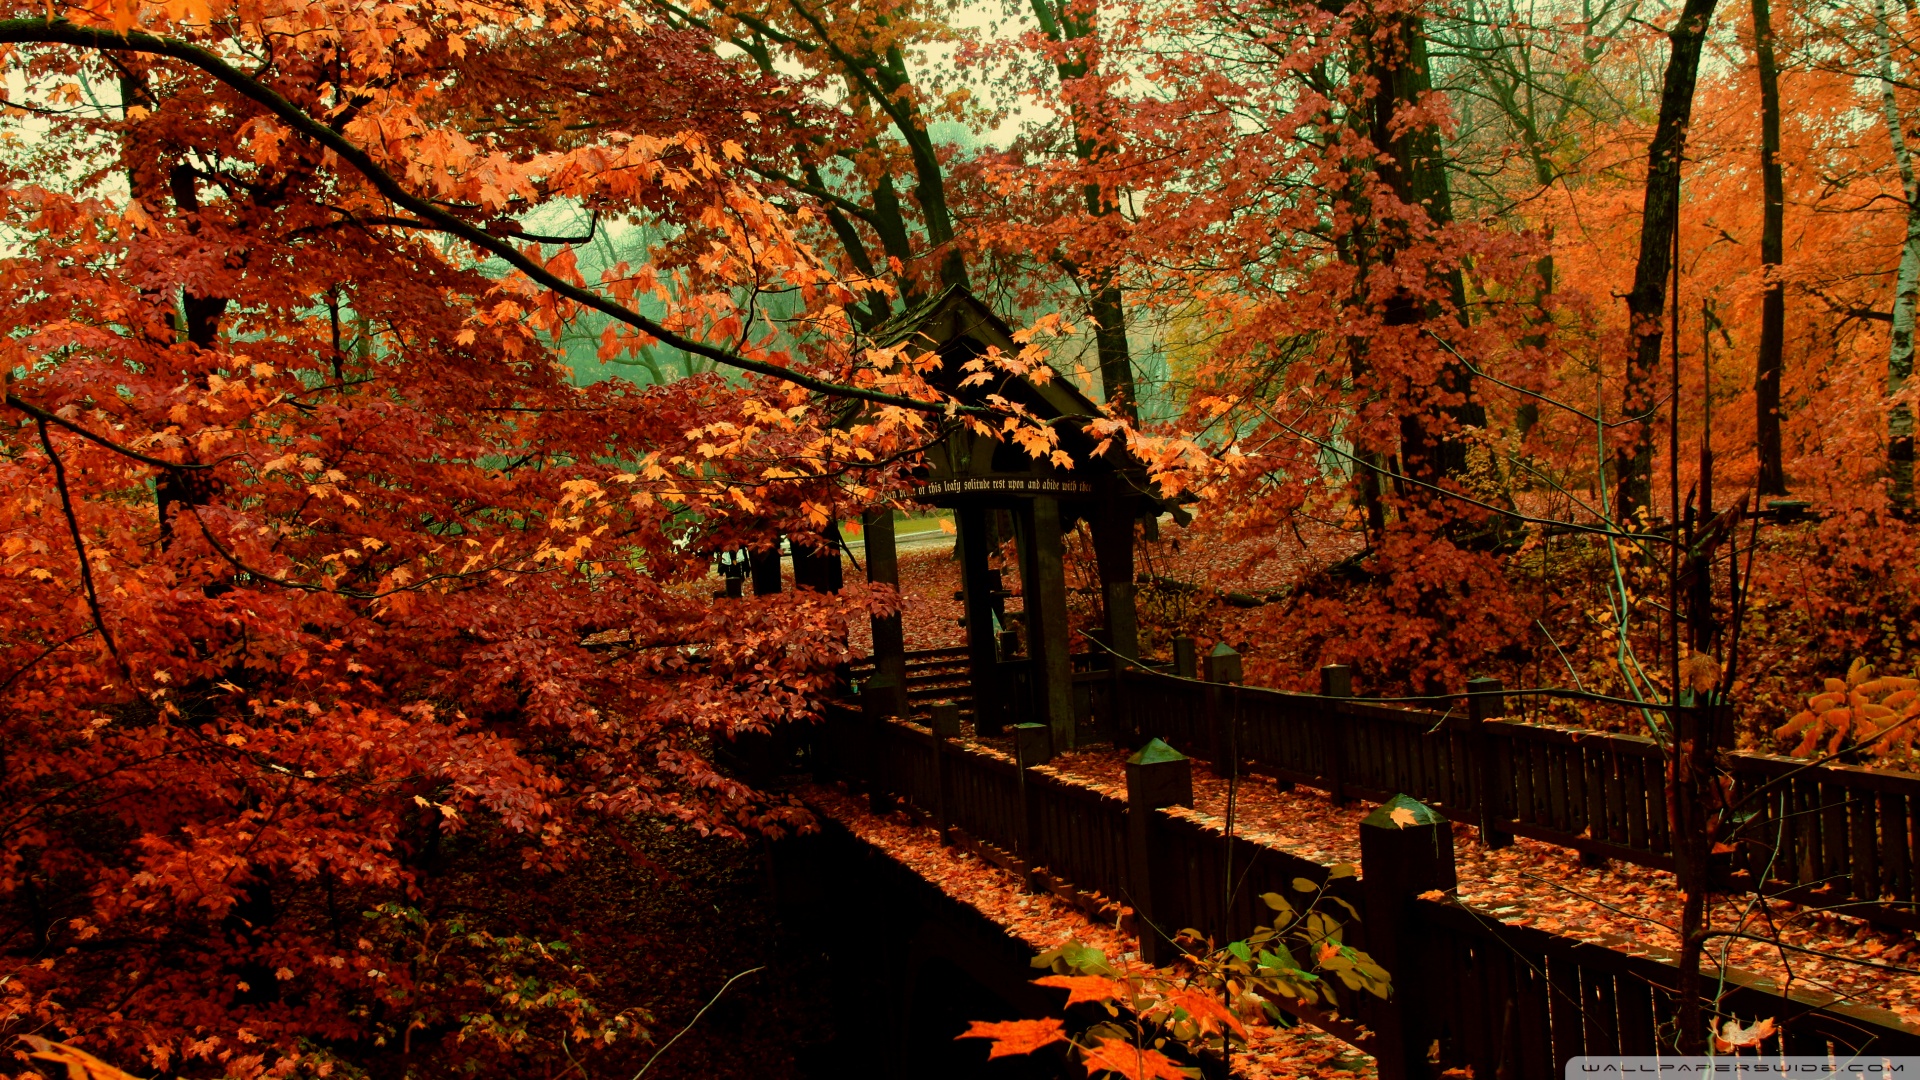 ラブシーンの壁紙,木,自然,自然の風景,葉,秋